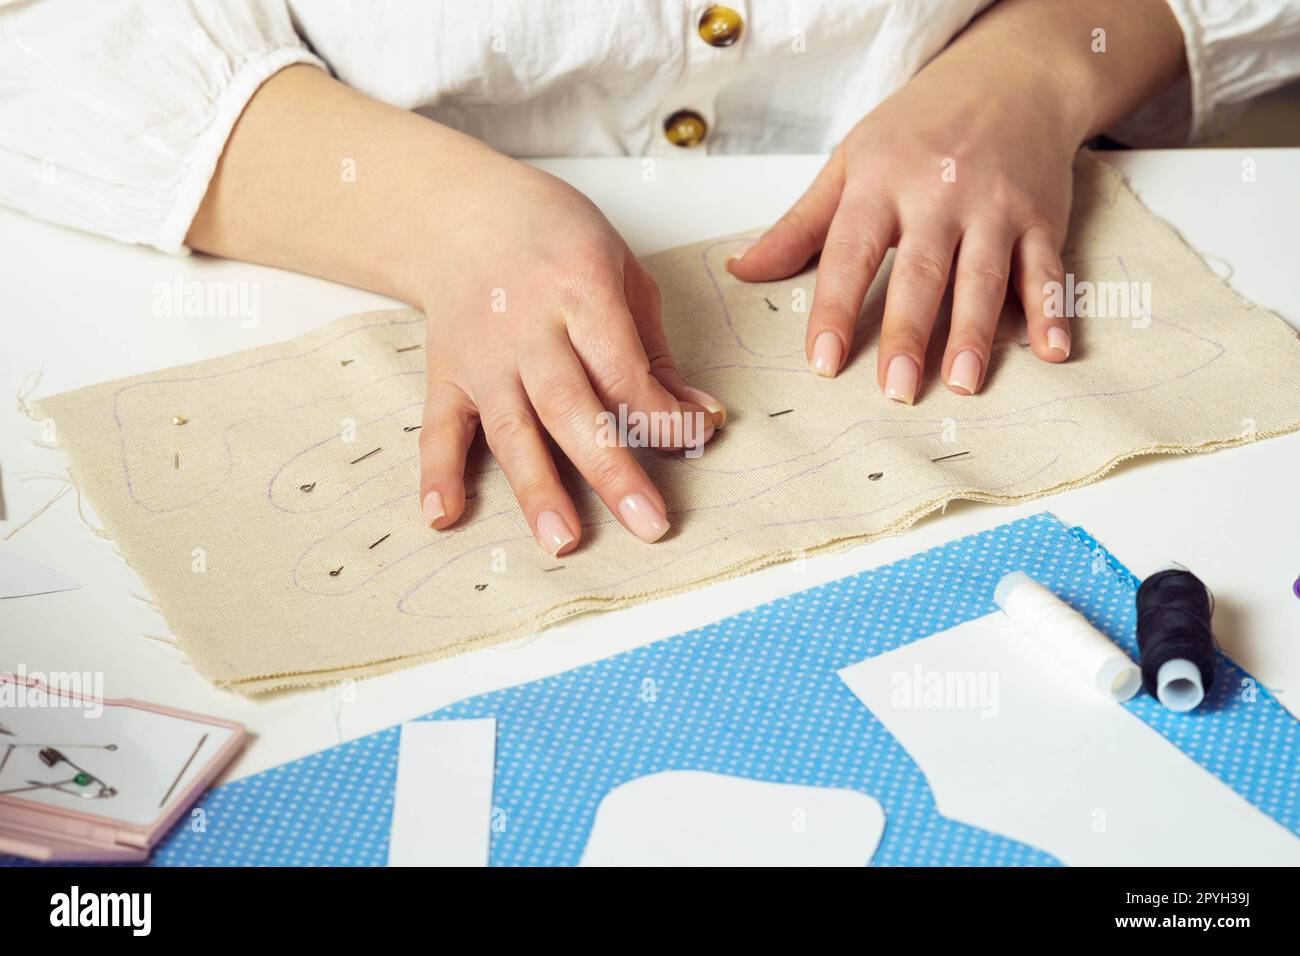 Mains couturières de femme coupée épinglant et faisant des patrons de couture sur la feuille textile sur la table. Travaux d'aiguille, couture de fil Banque D'Images